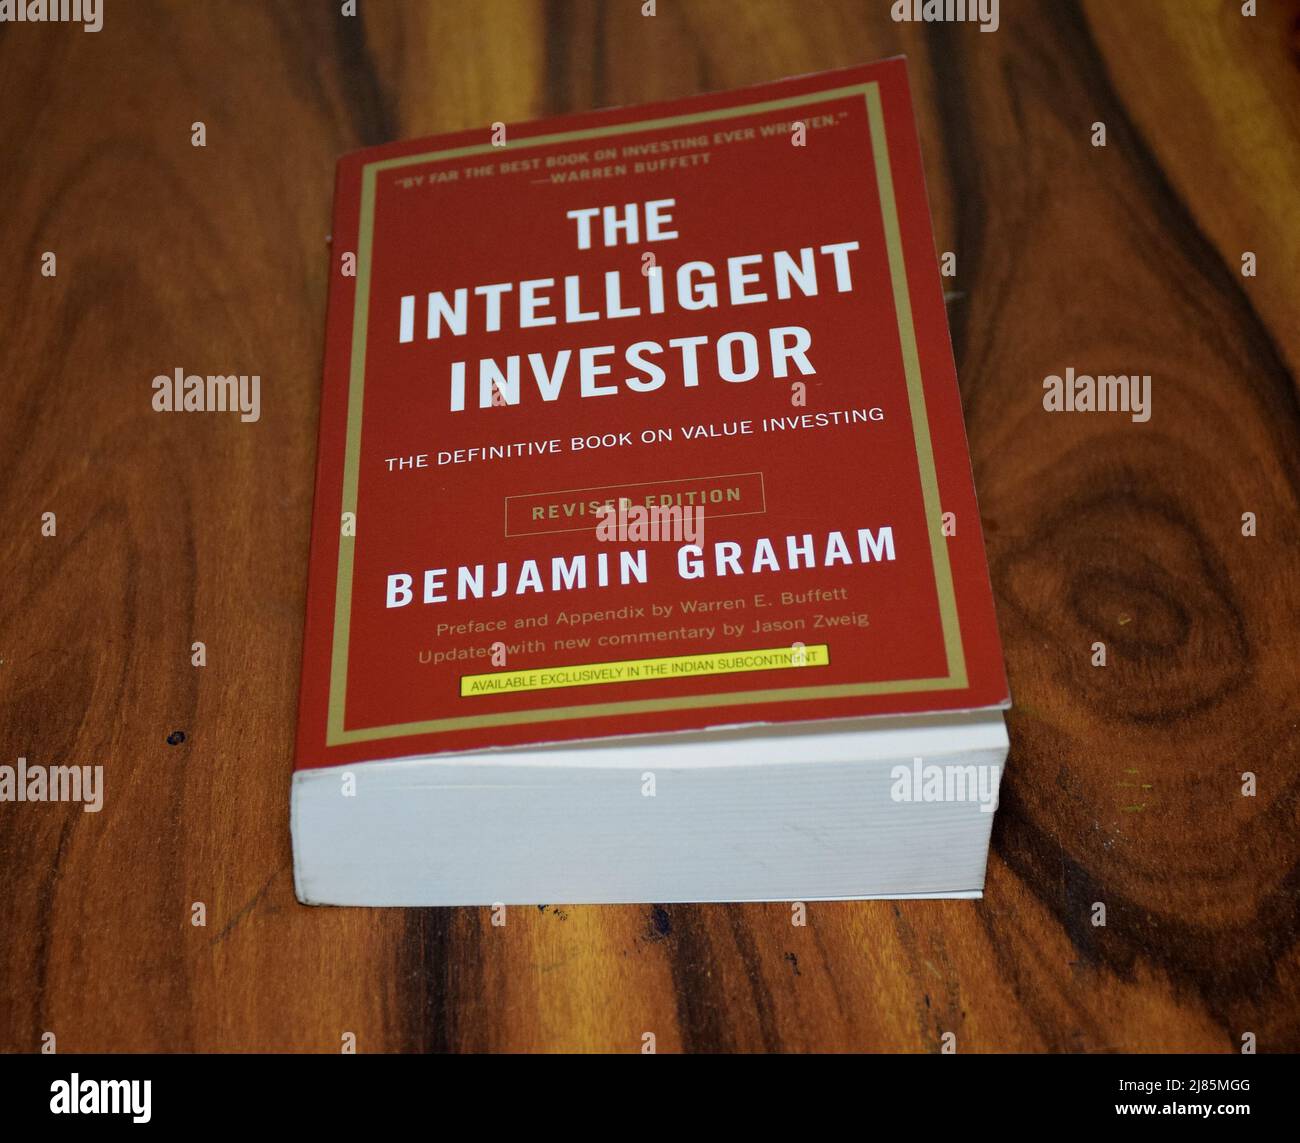 Investitore intelligente: la lezione di Benjamin Graham - Class CNBC Video